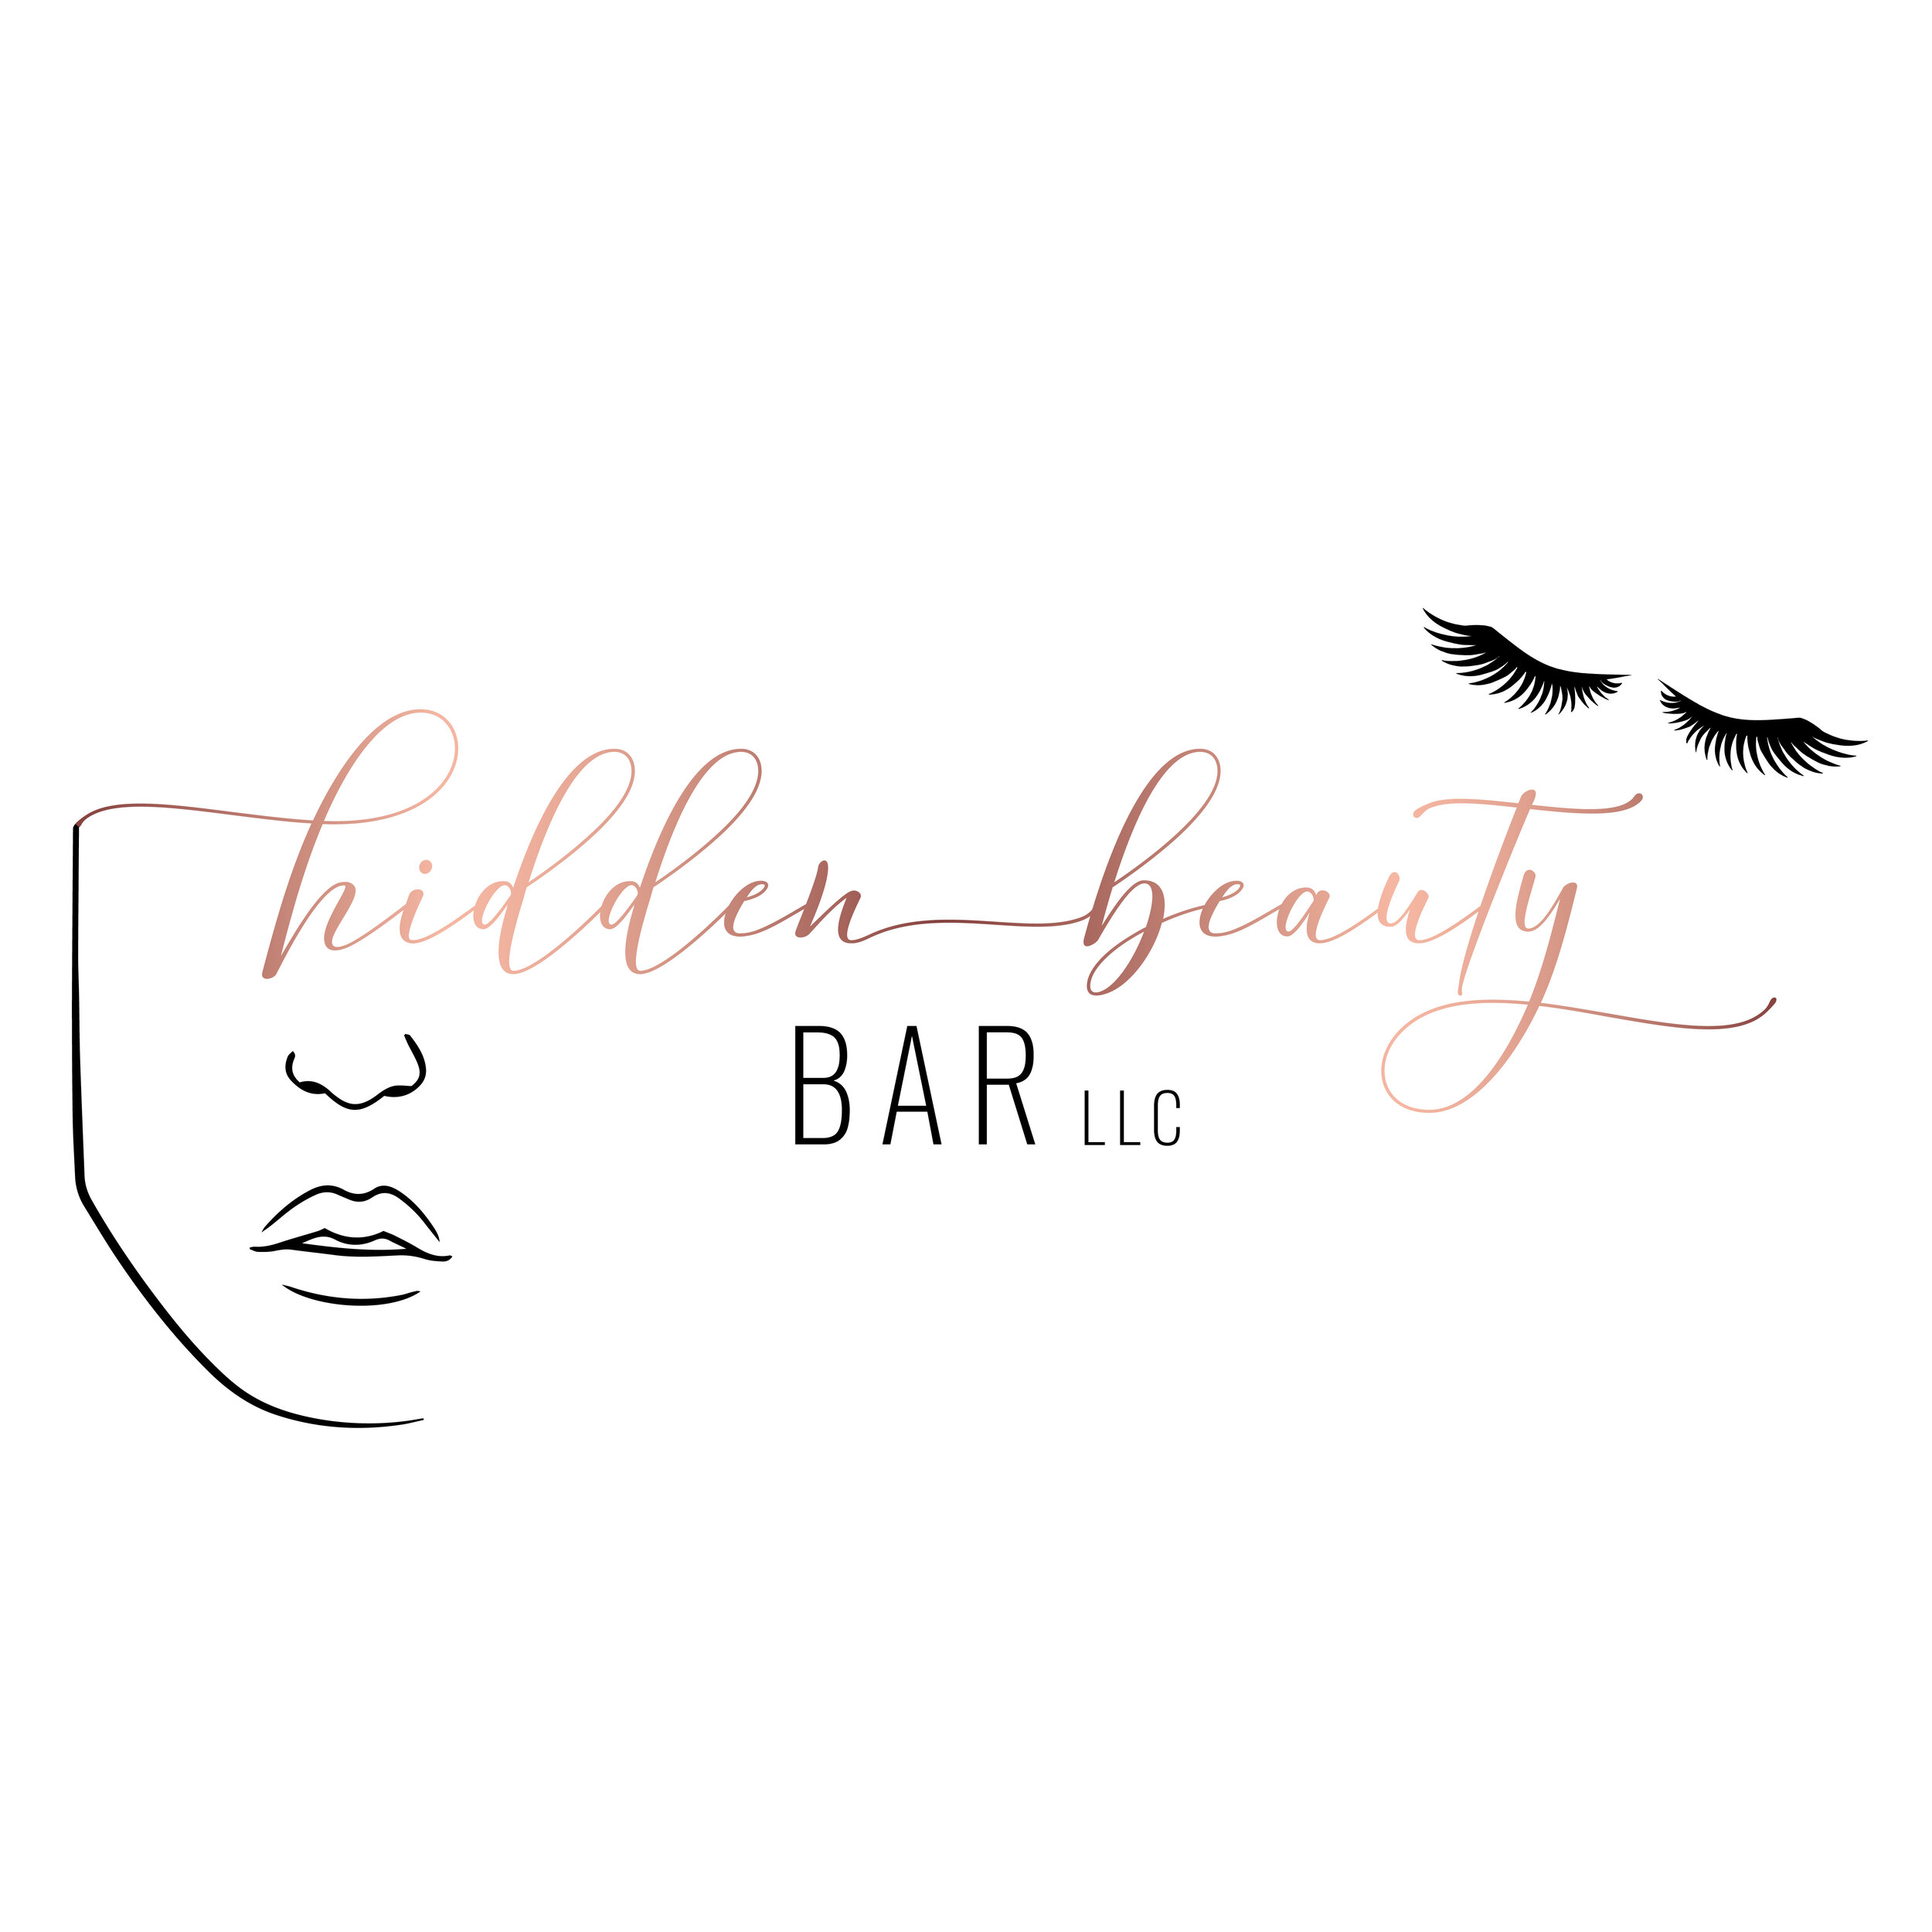 Hidden Beauty Bar LLC